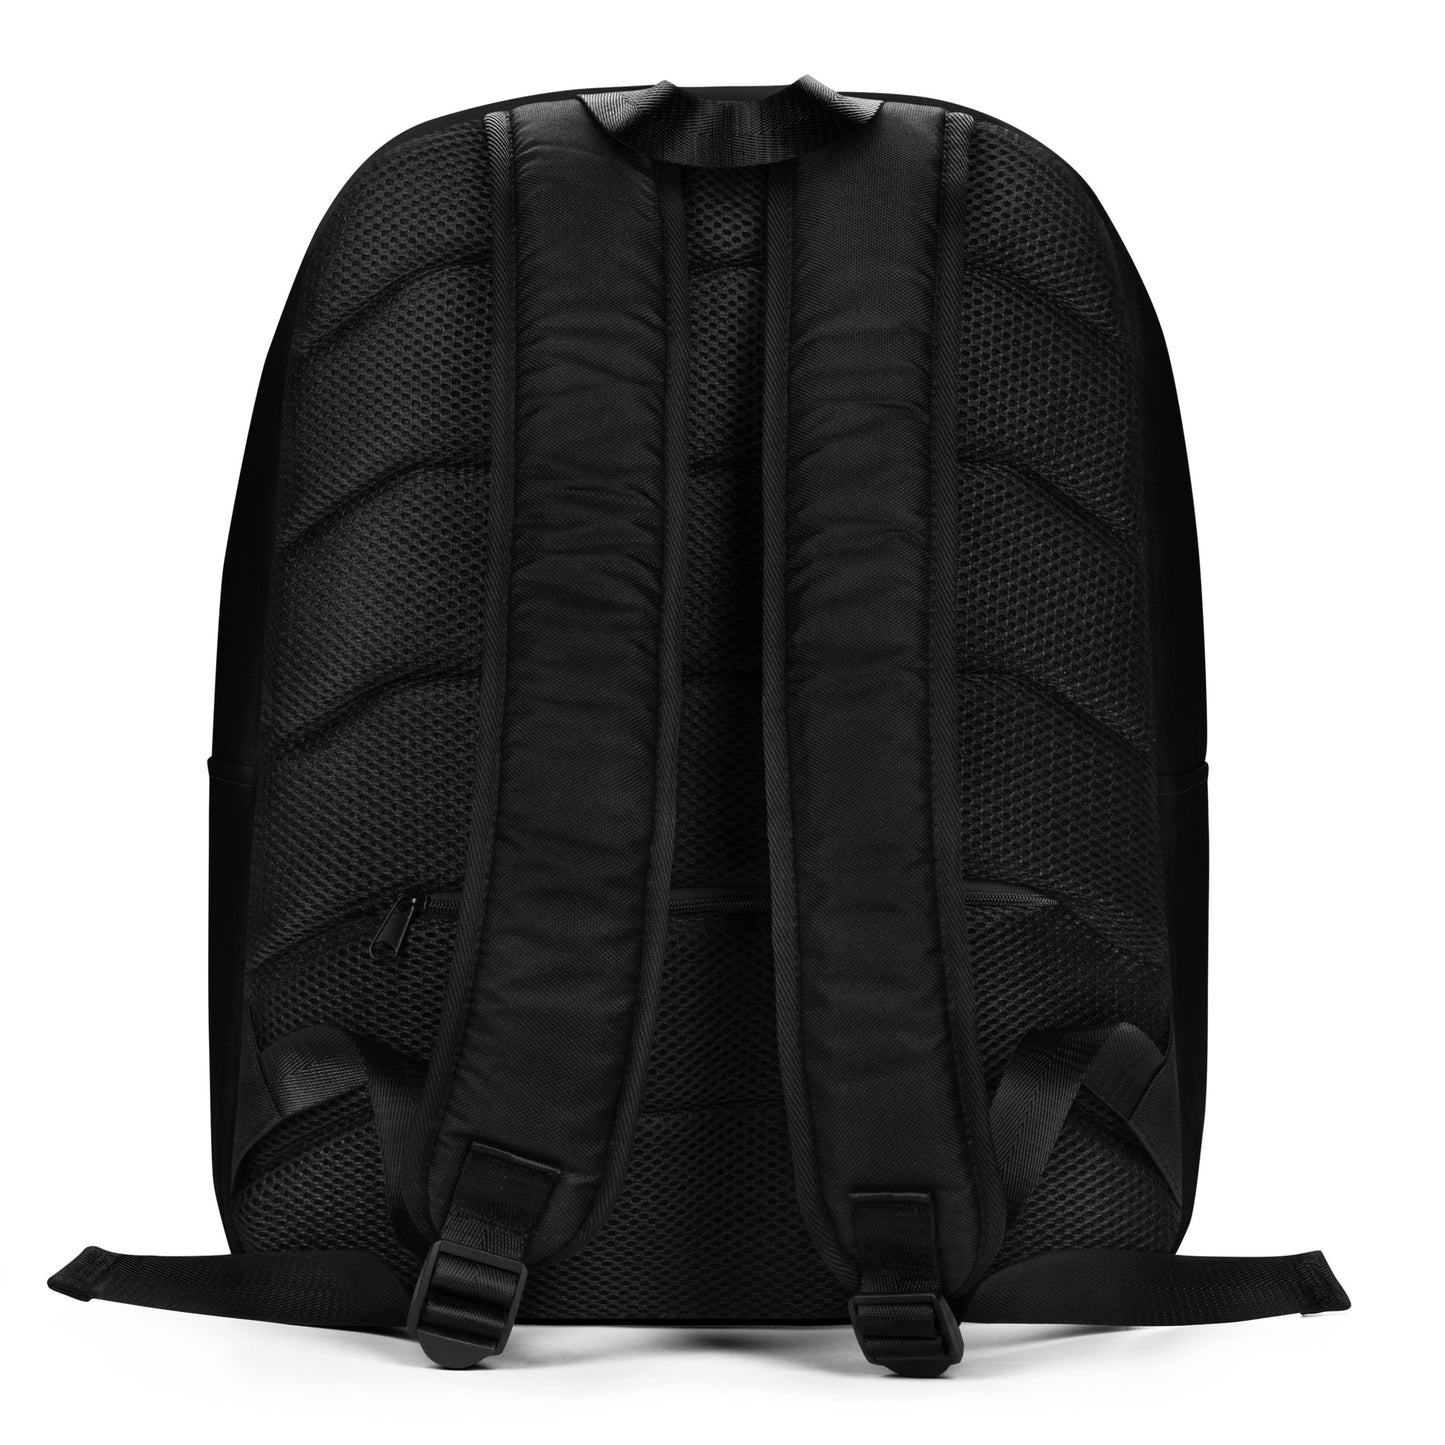 Aries Backpack Black